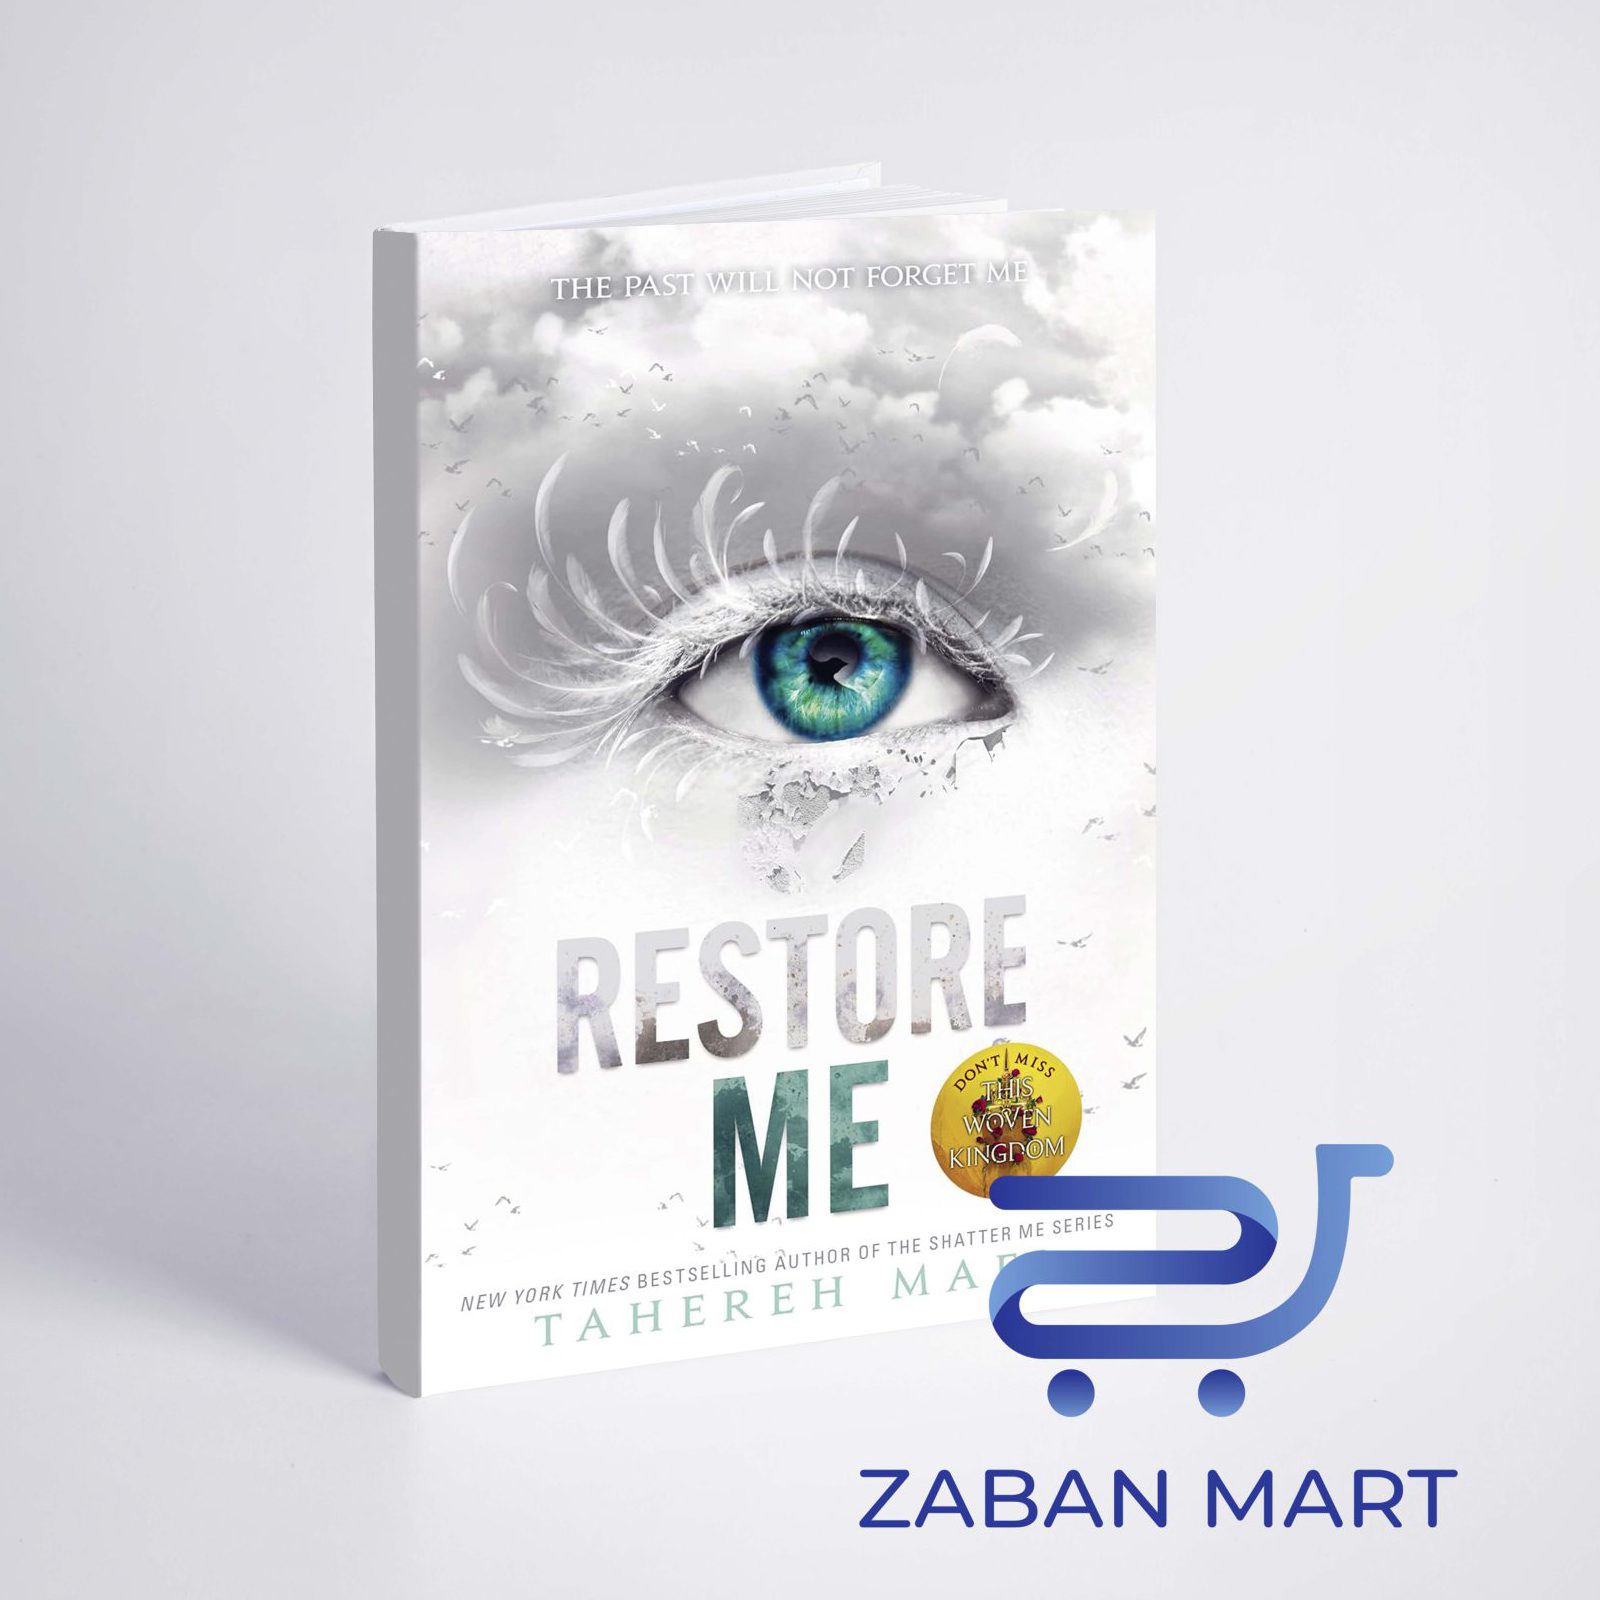 خرید رمان رستور می | Restore Me (Shatter Me Book 4)